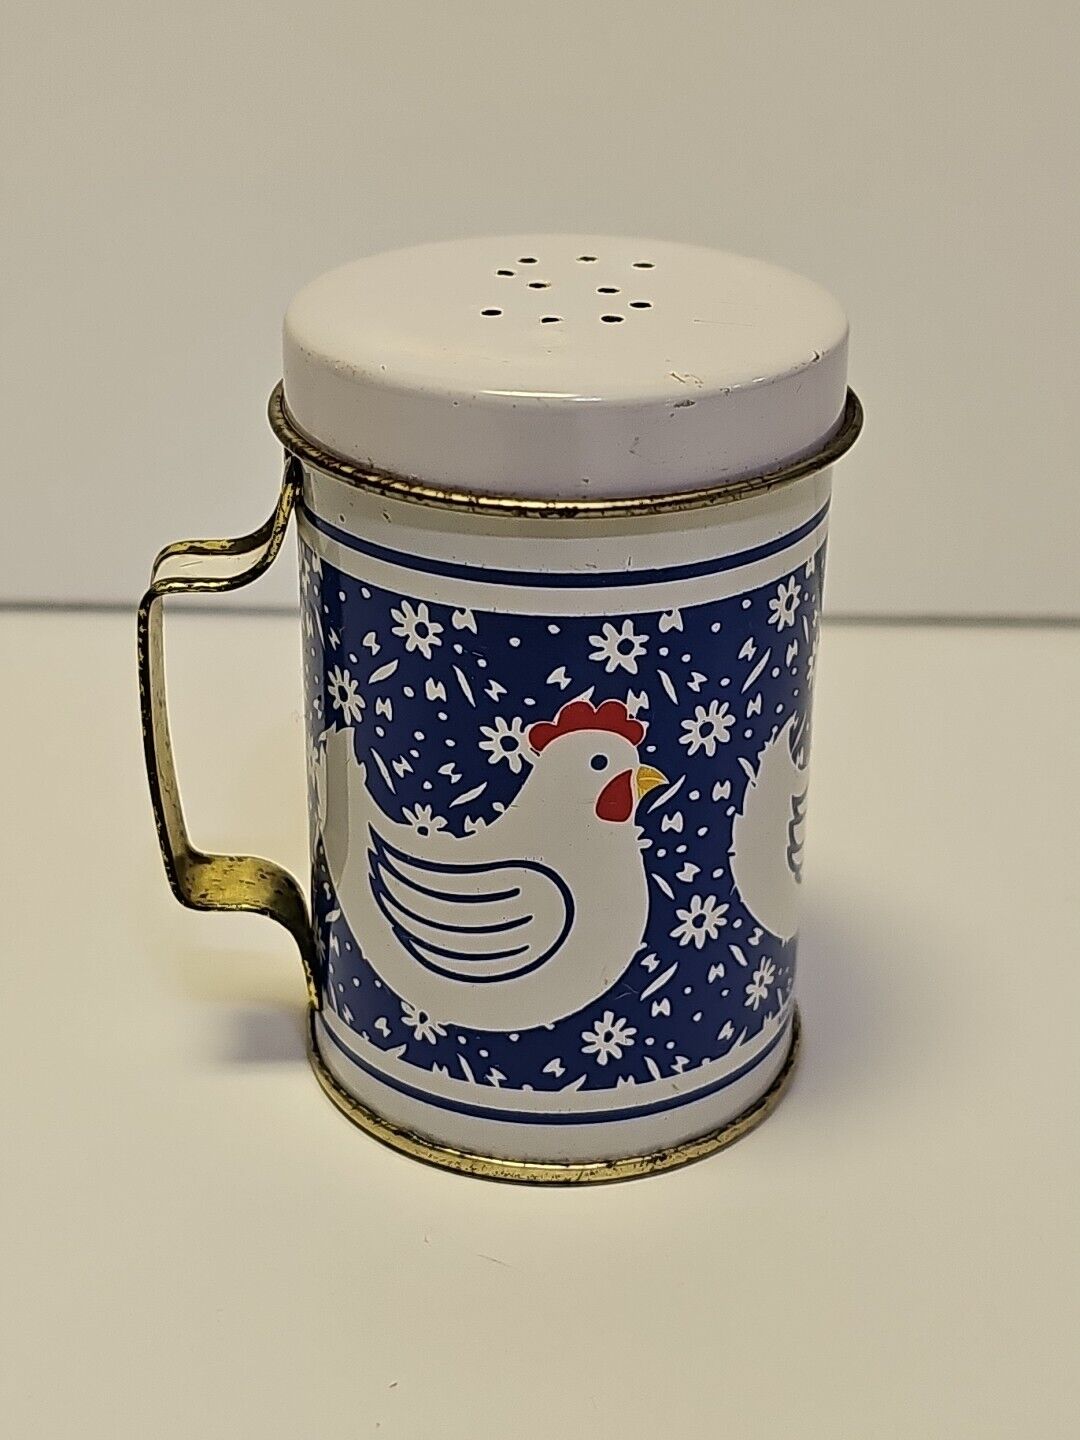 Vintage Metal Single Salt Shaker - Chicken/Rooster 